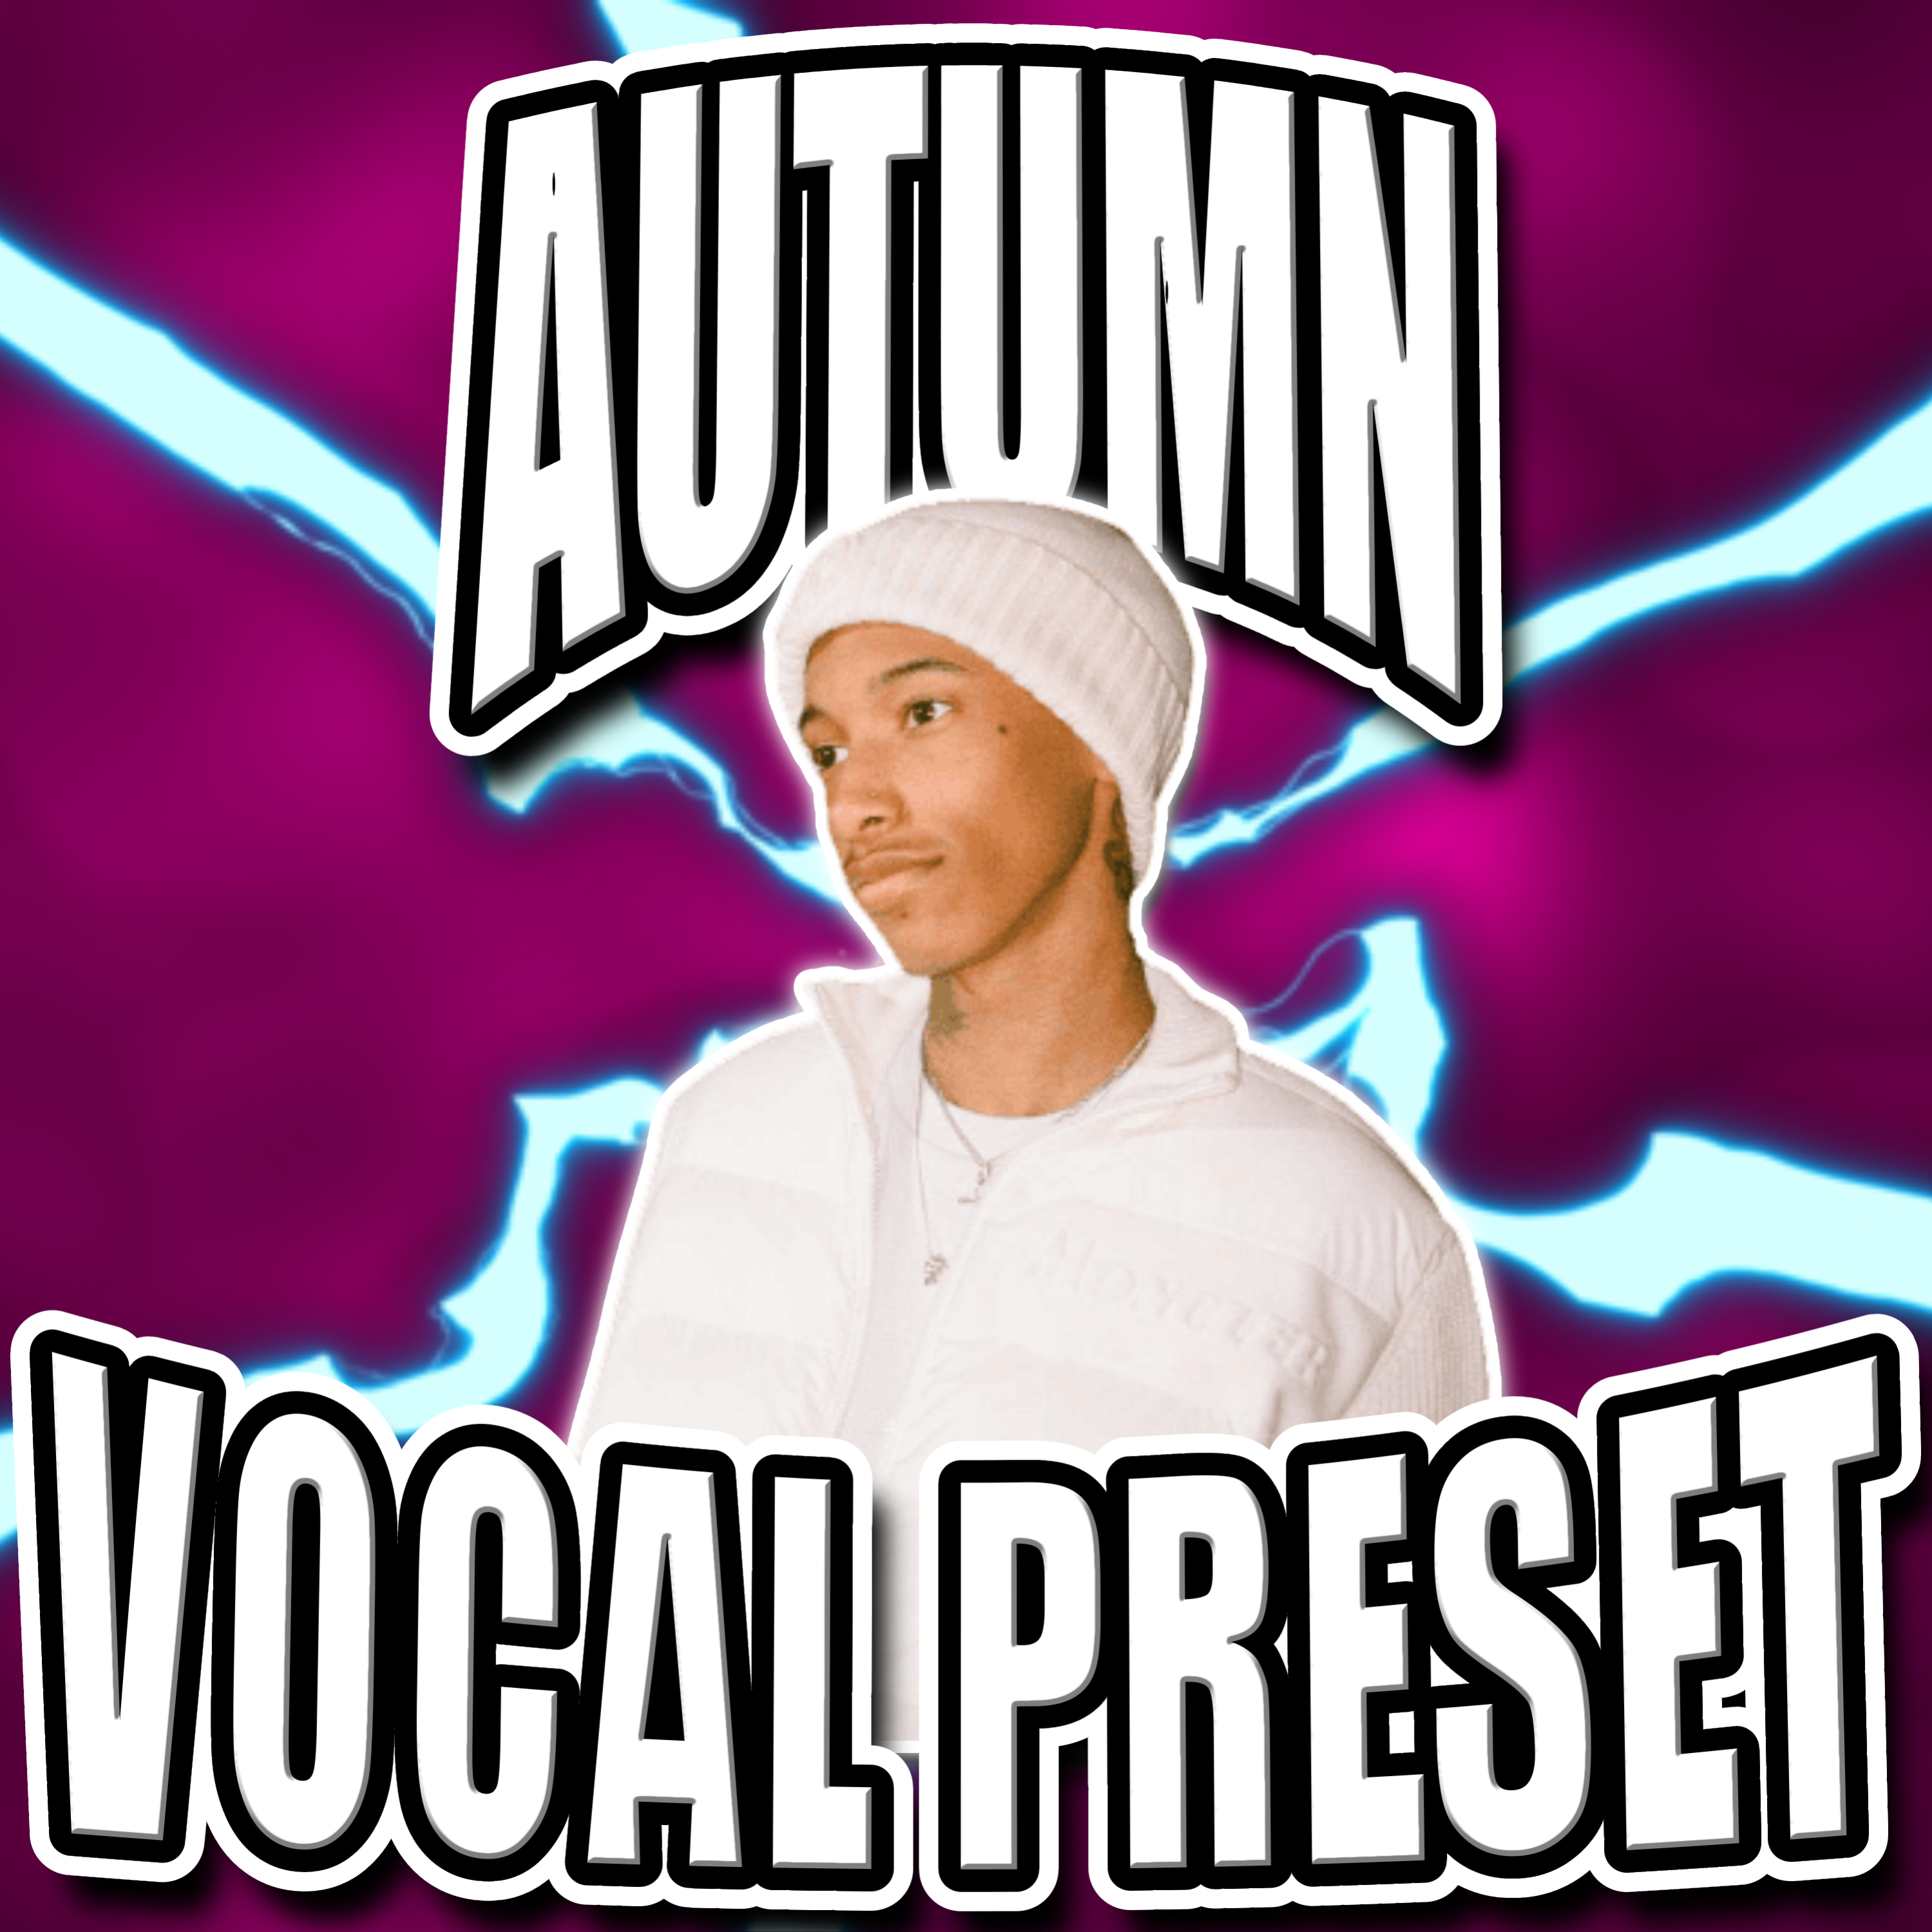 Autumn Vocal Preset